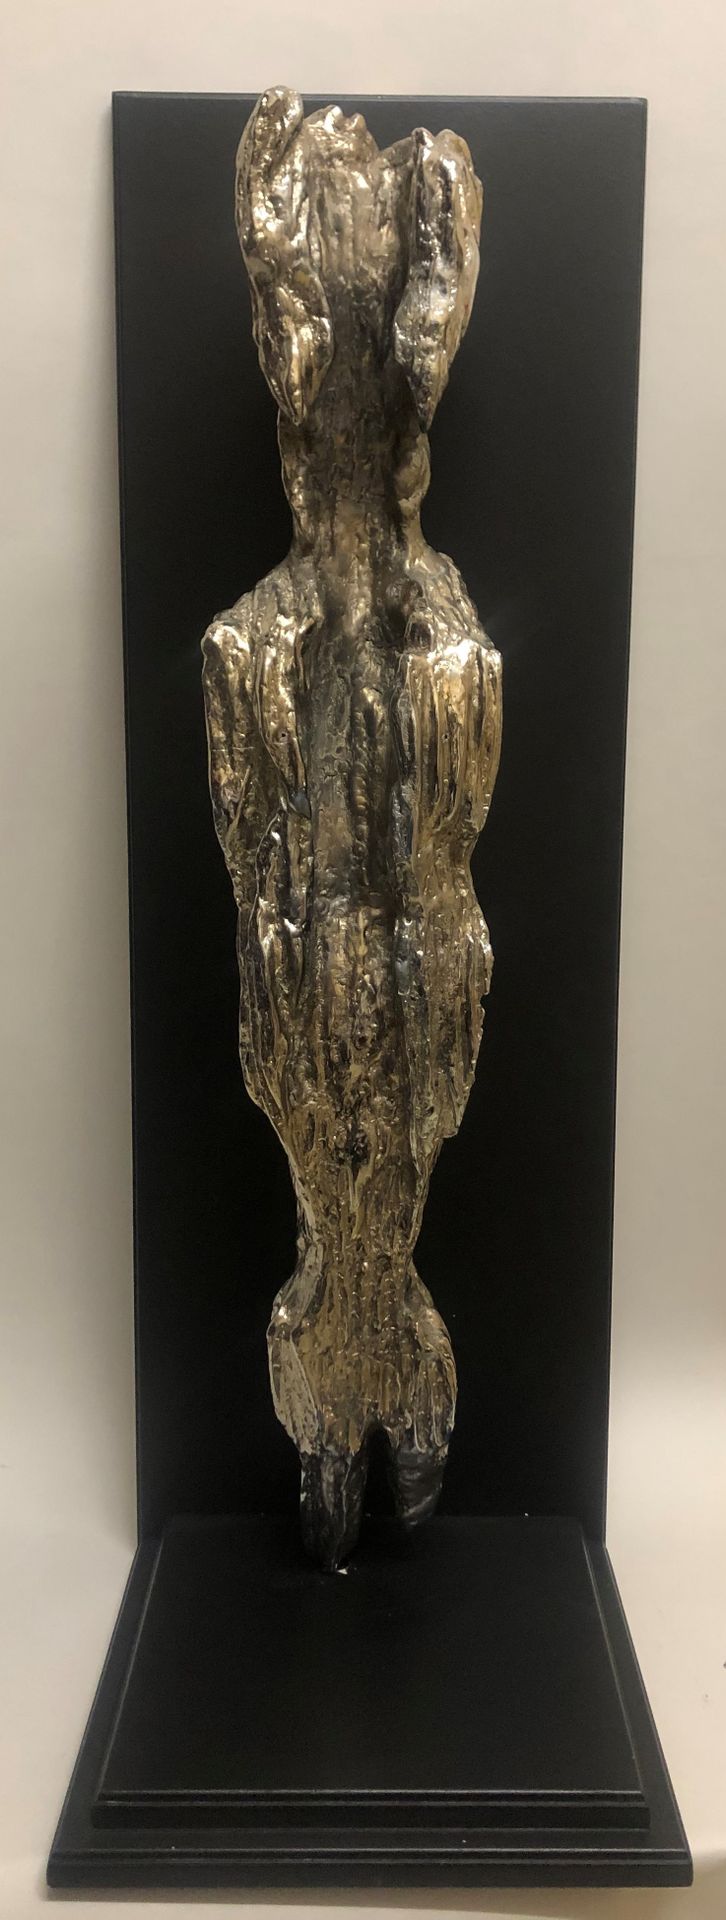 Null 帕斯卡尔-莫拉比托（生于1945年），雕塑《祖先永恒》-2007年-青铜镀铬-90厘米-11克拉-。

有了它的证书。